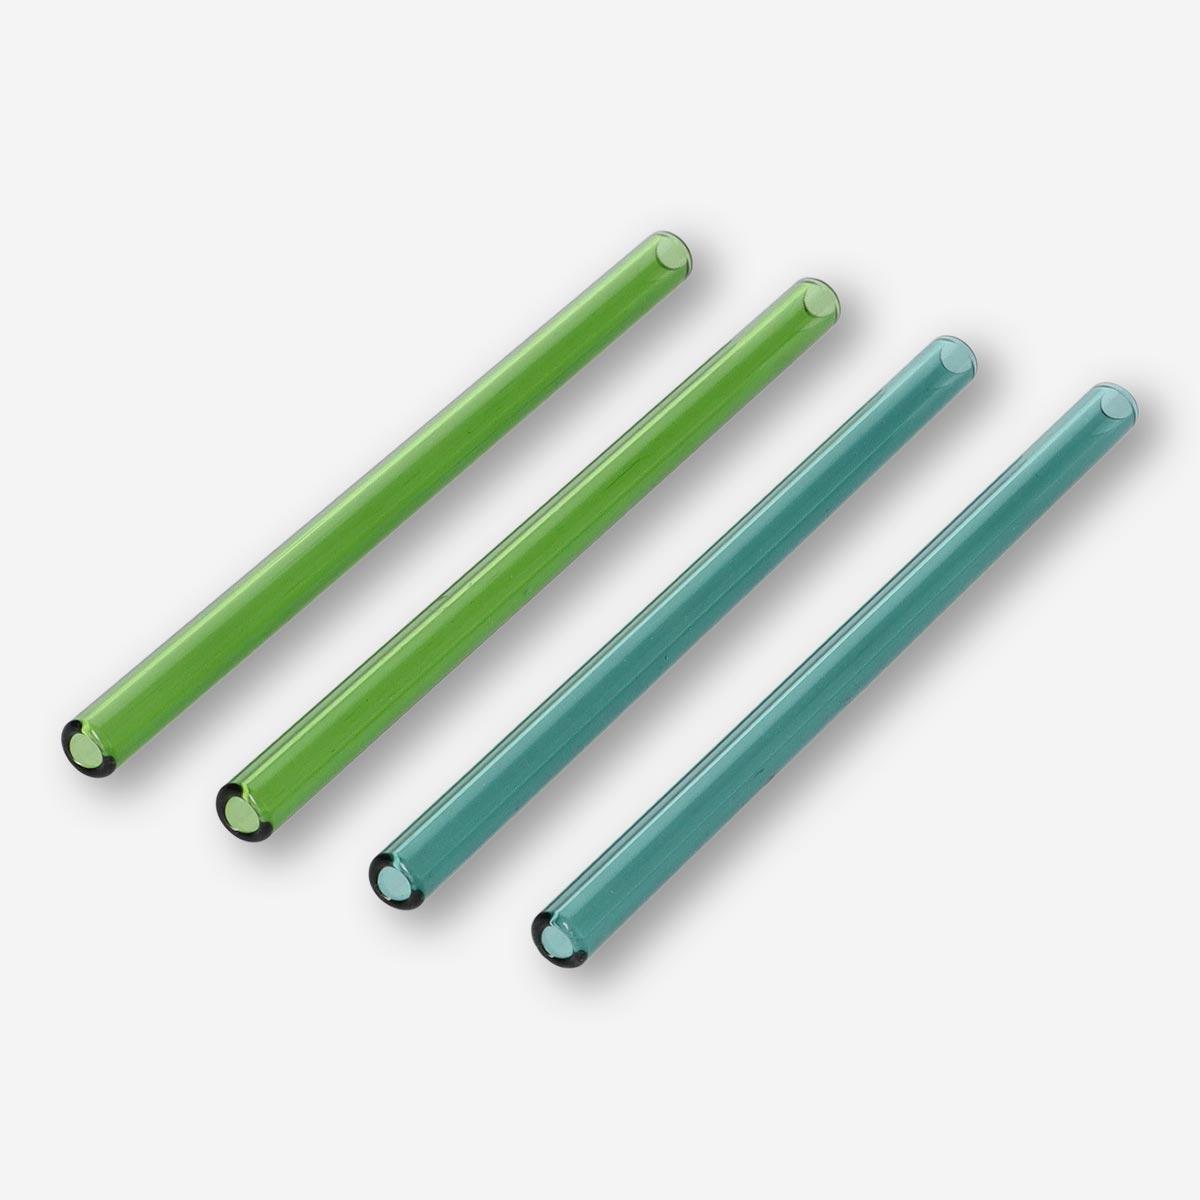 Multicolour glass straws